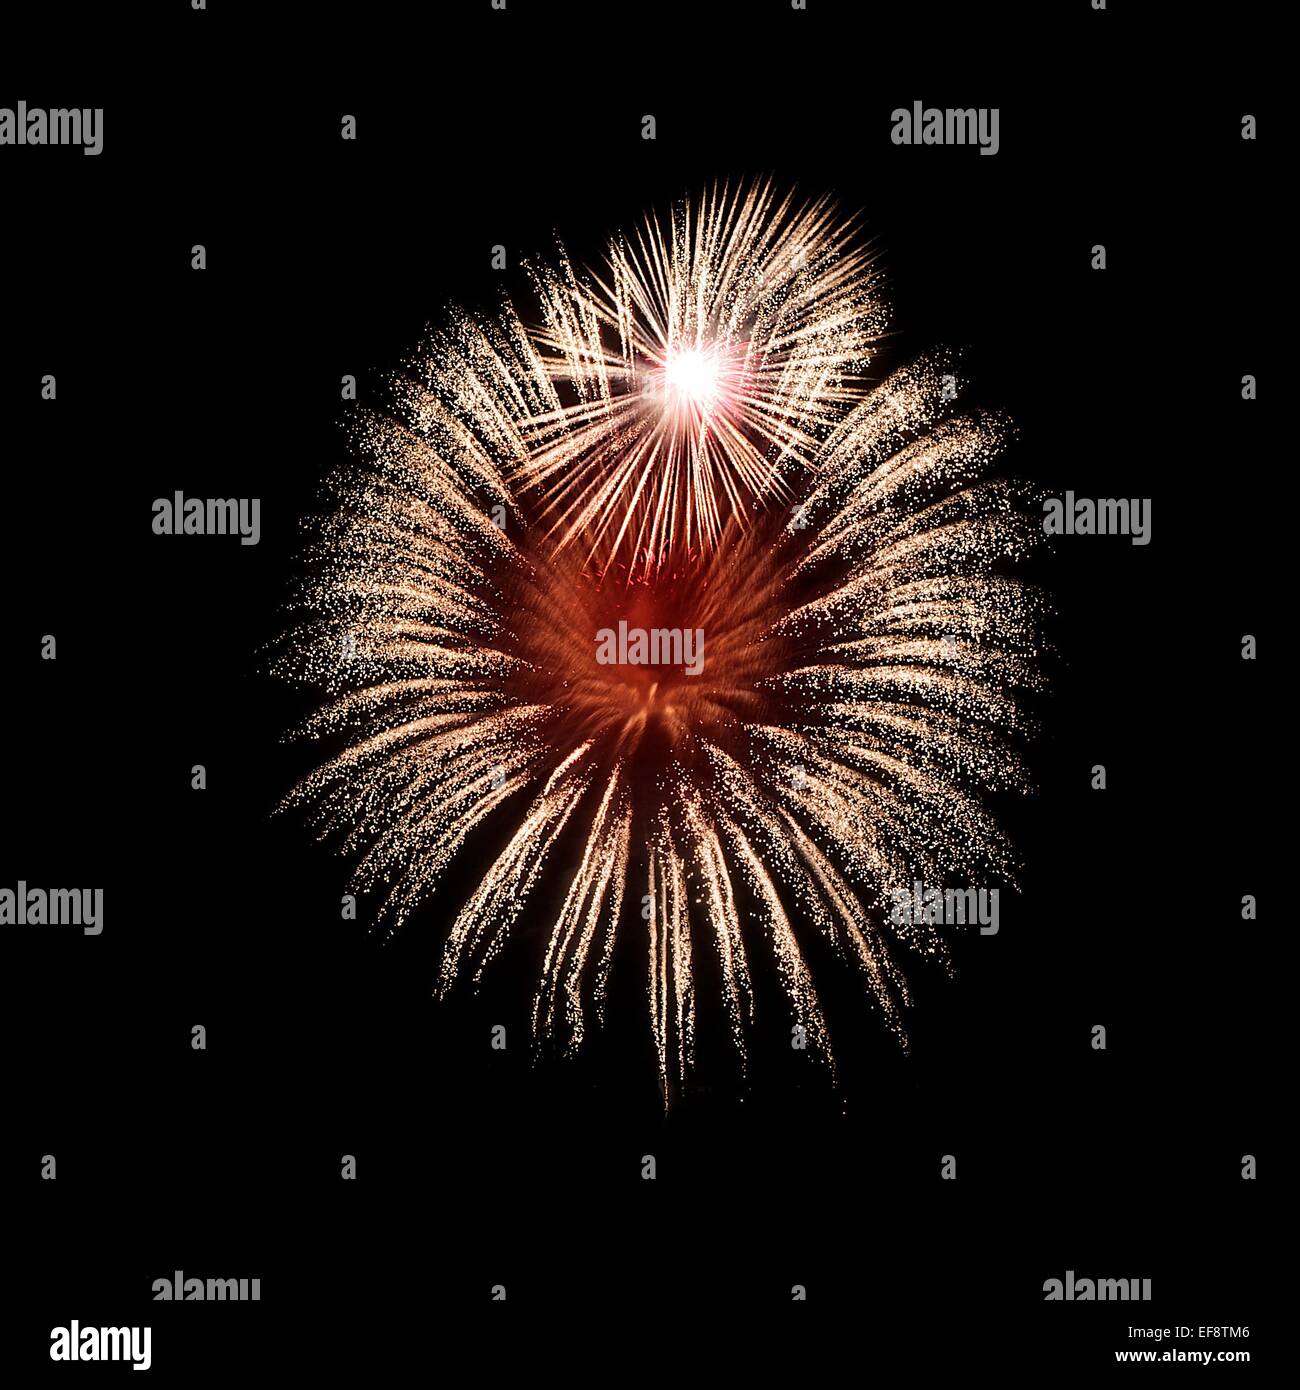 Fireworks exploding in sky, Malta Stock Photo